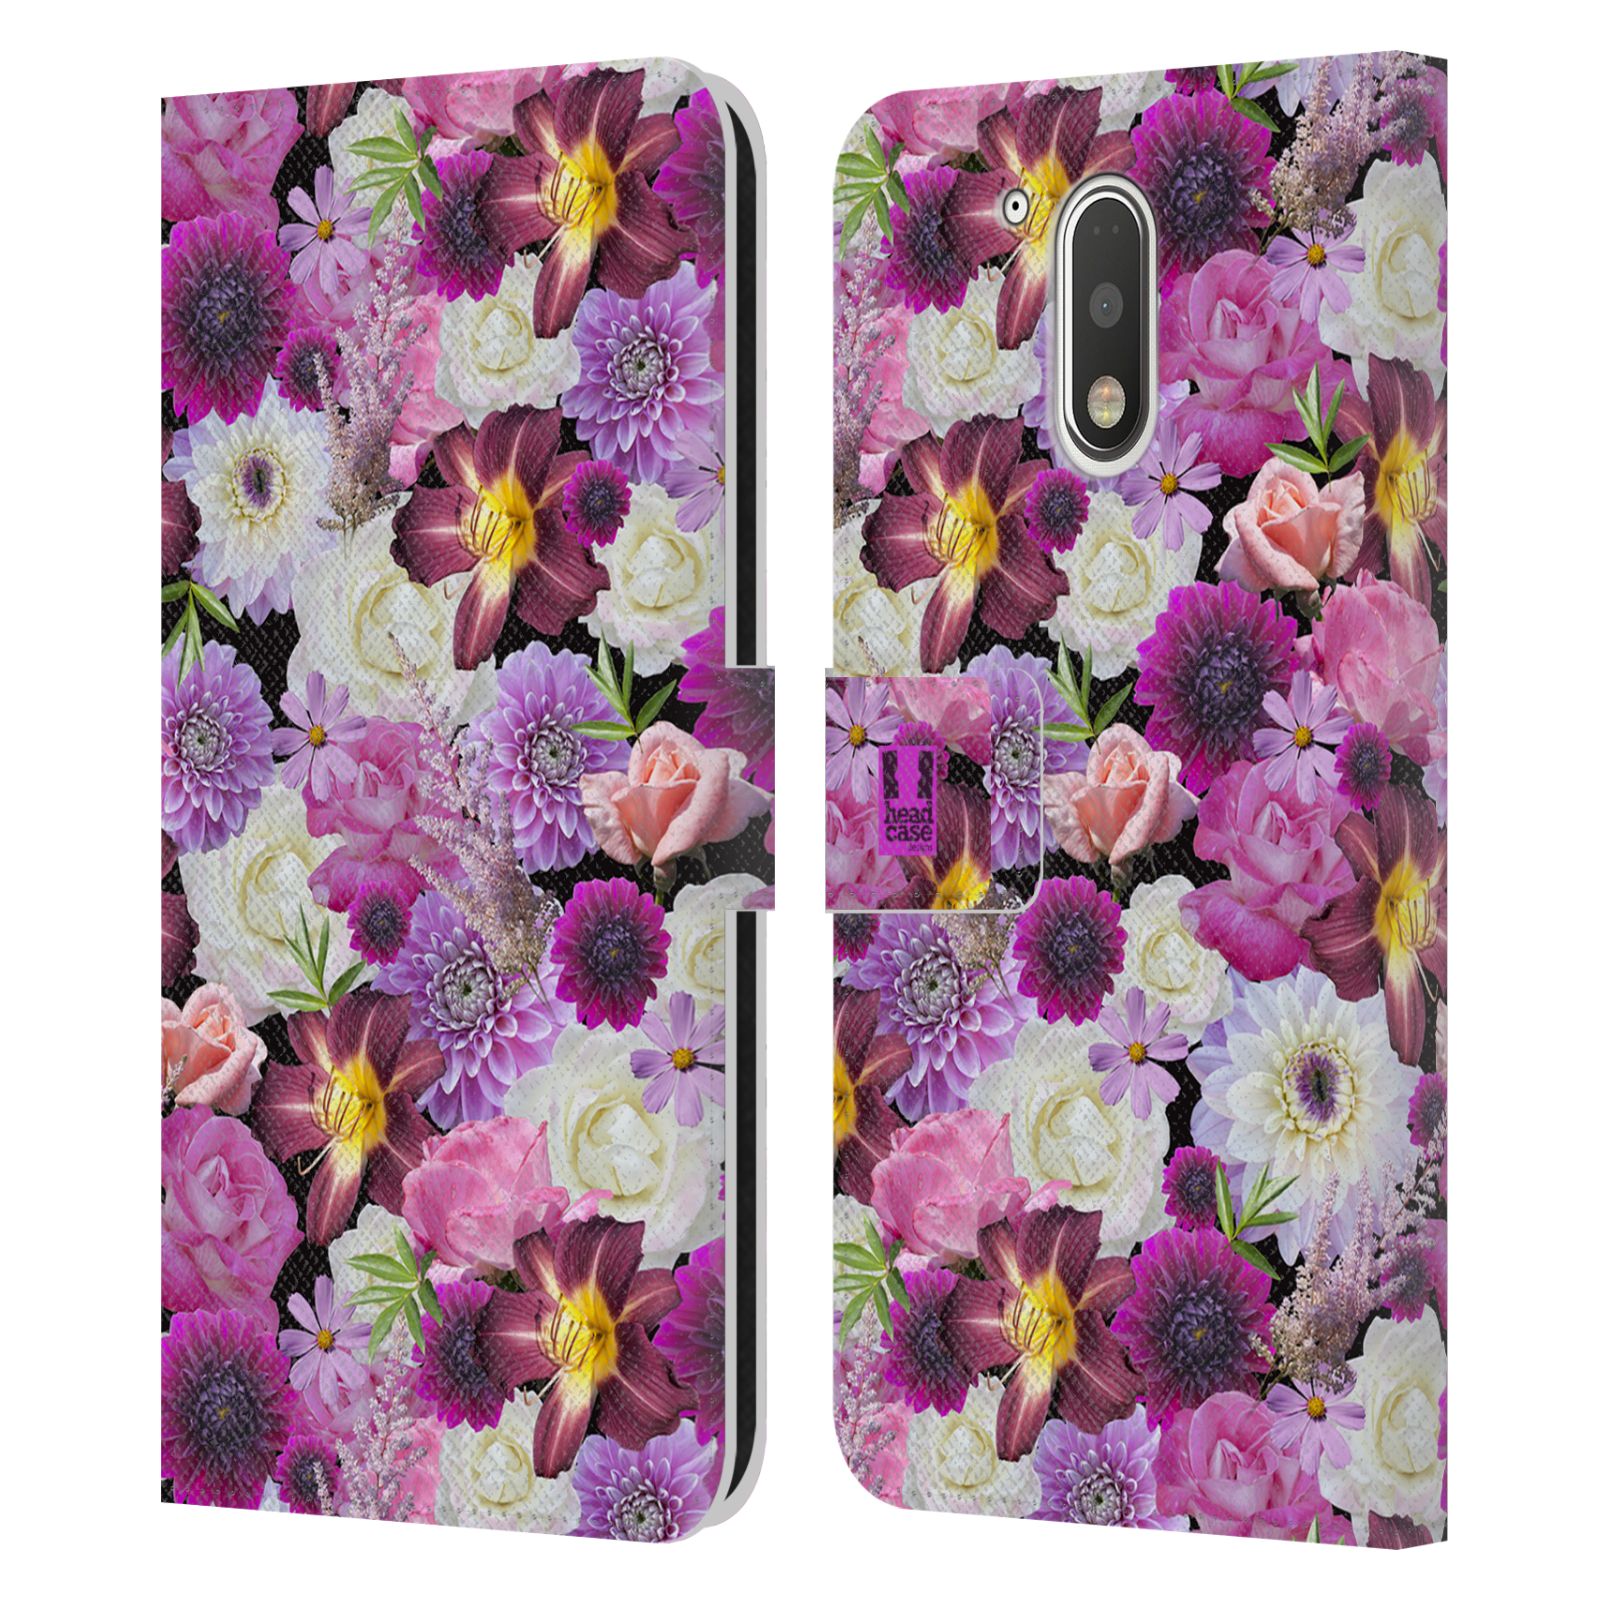 Pouzdro HEAD CASE na mobil Motorola Moto G41 květy foto fialová a bílá